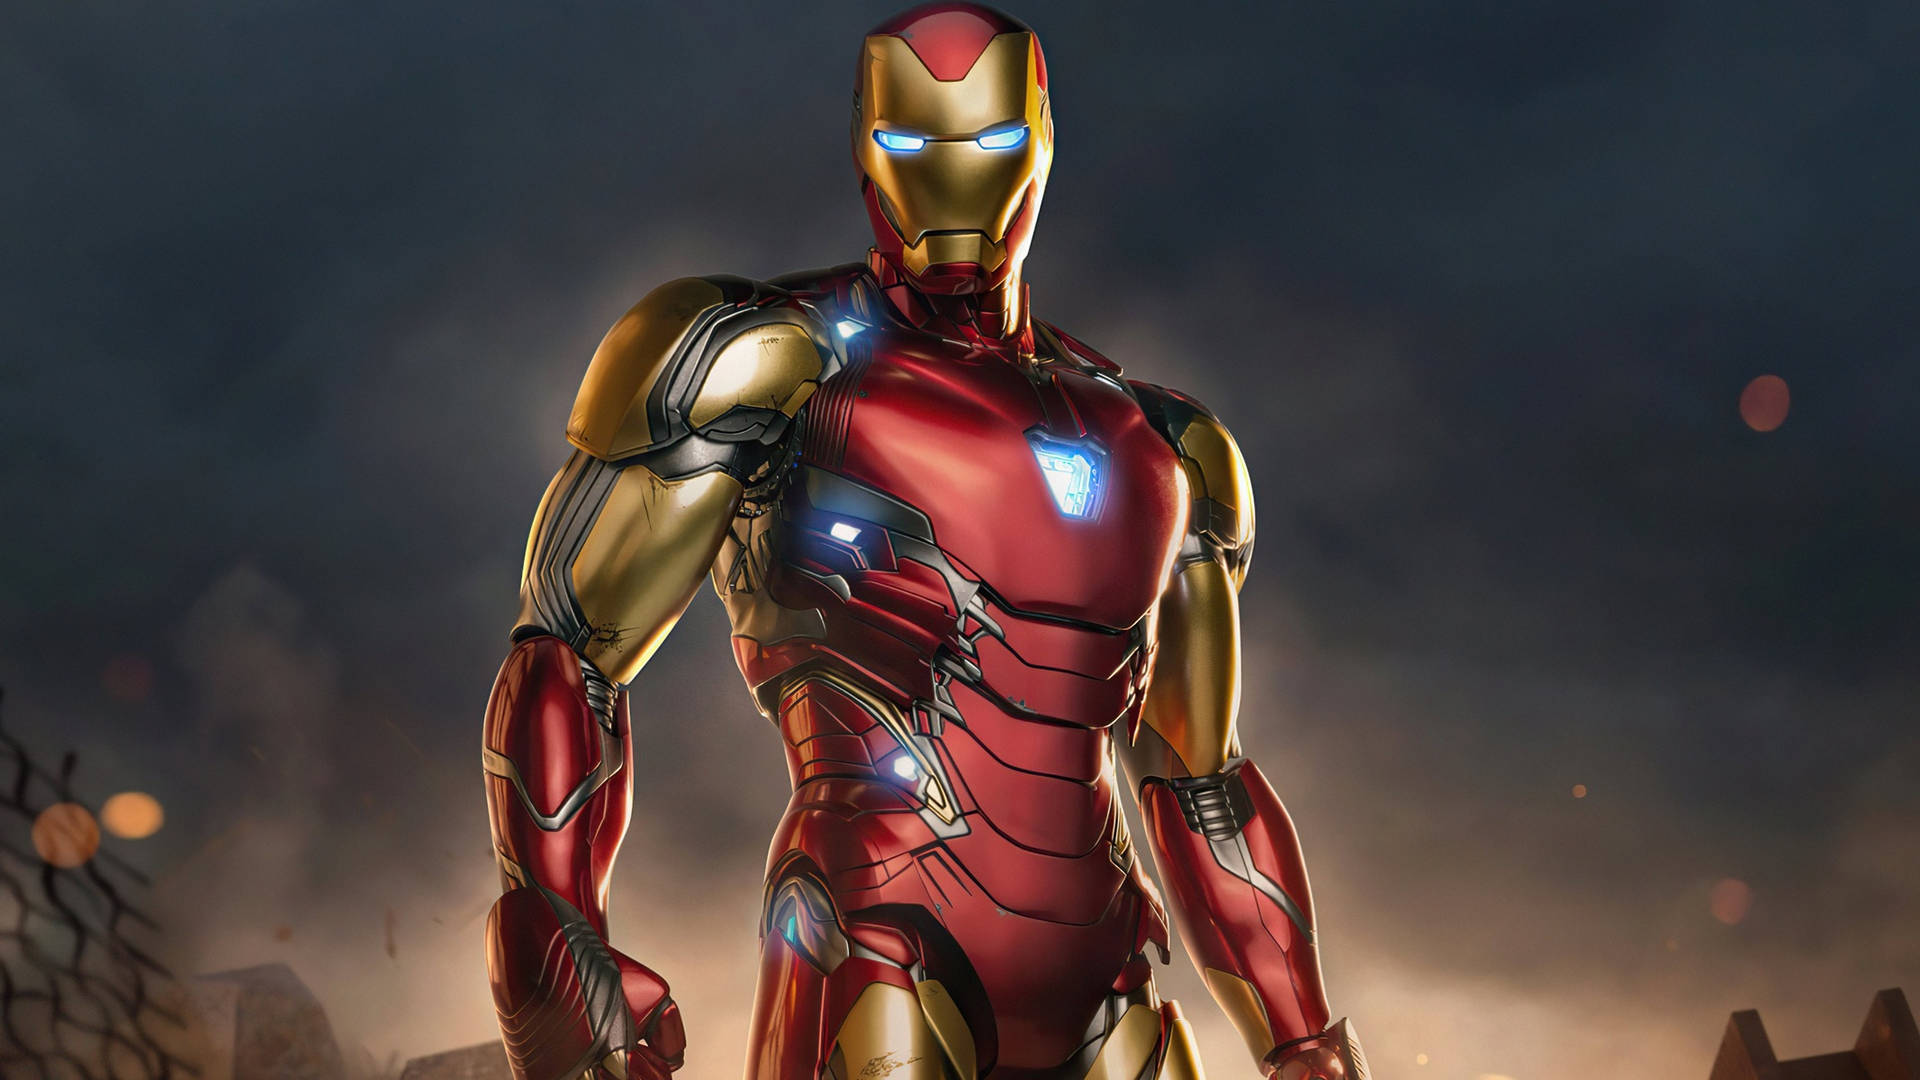 Avengersendgame Iron Man Superhjälte Wallpaper